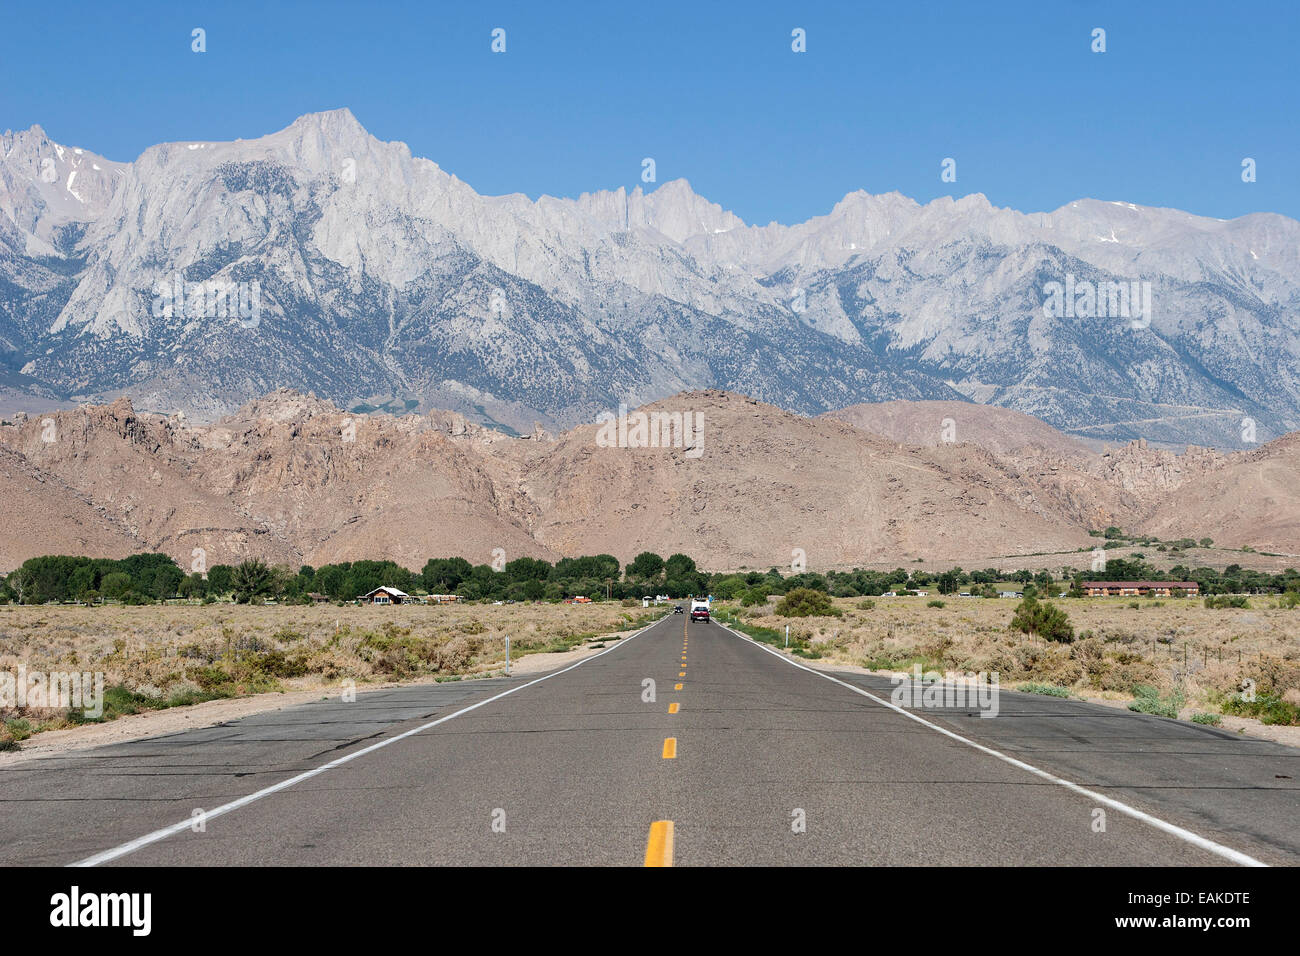 La carretera no. 136, cerca de Lone Pine, las montañas de Sierra Nevada en la espalda, California, Estados Unidos Foto de stock